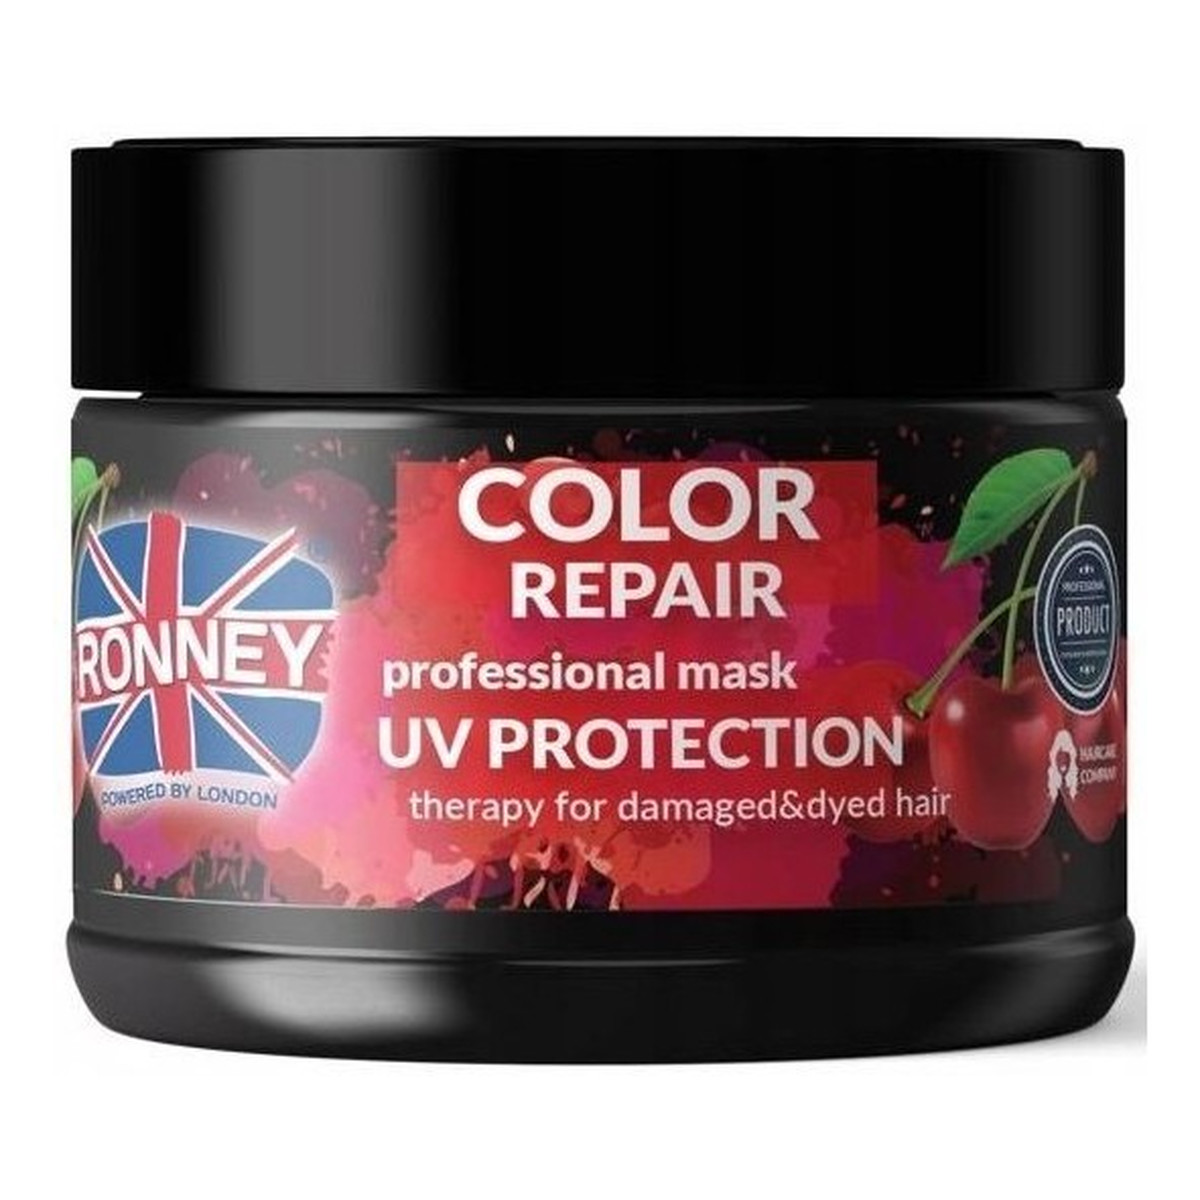 Ronney Color Repair Professional Mask UV Protection Therapy For Damaged & Dyed Hair maska zabezpieczająca kolor włosów farbowanych z ekstraktem z japońskiej wiśni 300ml